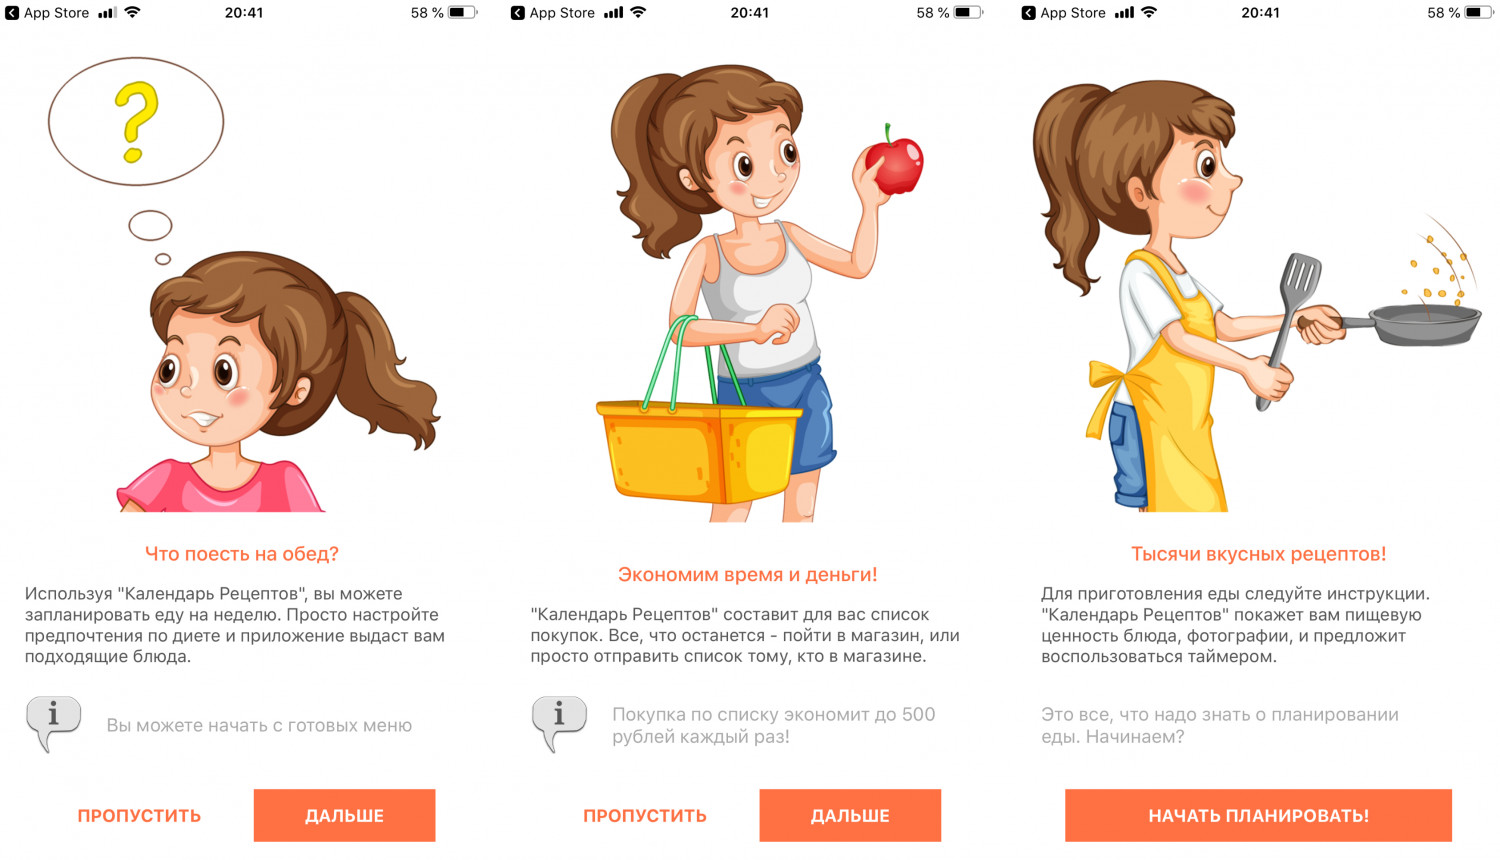 9 удачных мобильных кулинарных приложений с рецептами и блюдами для телефонов на Андроид и iOS